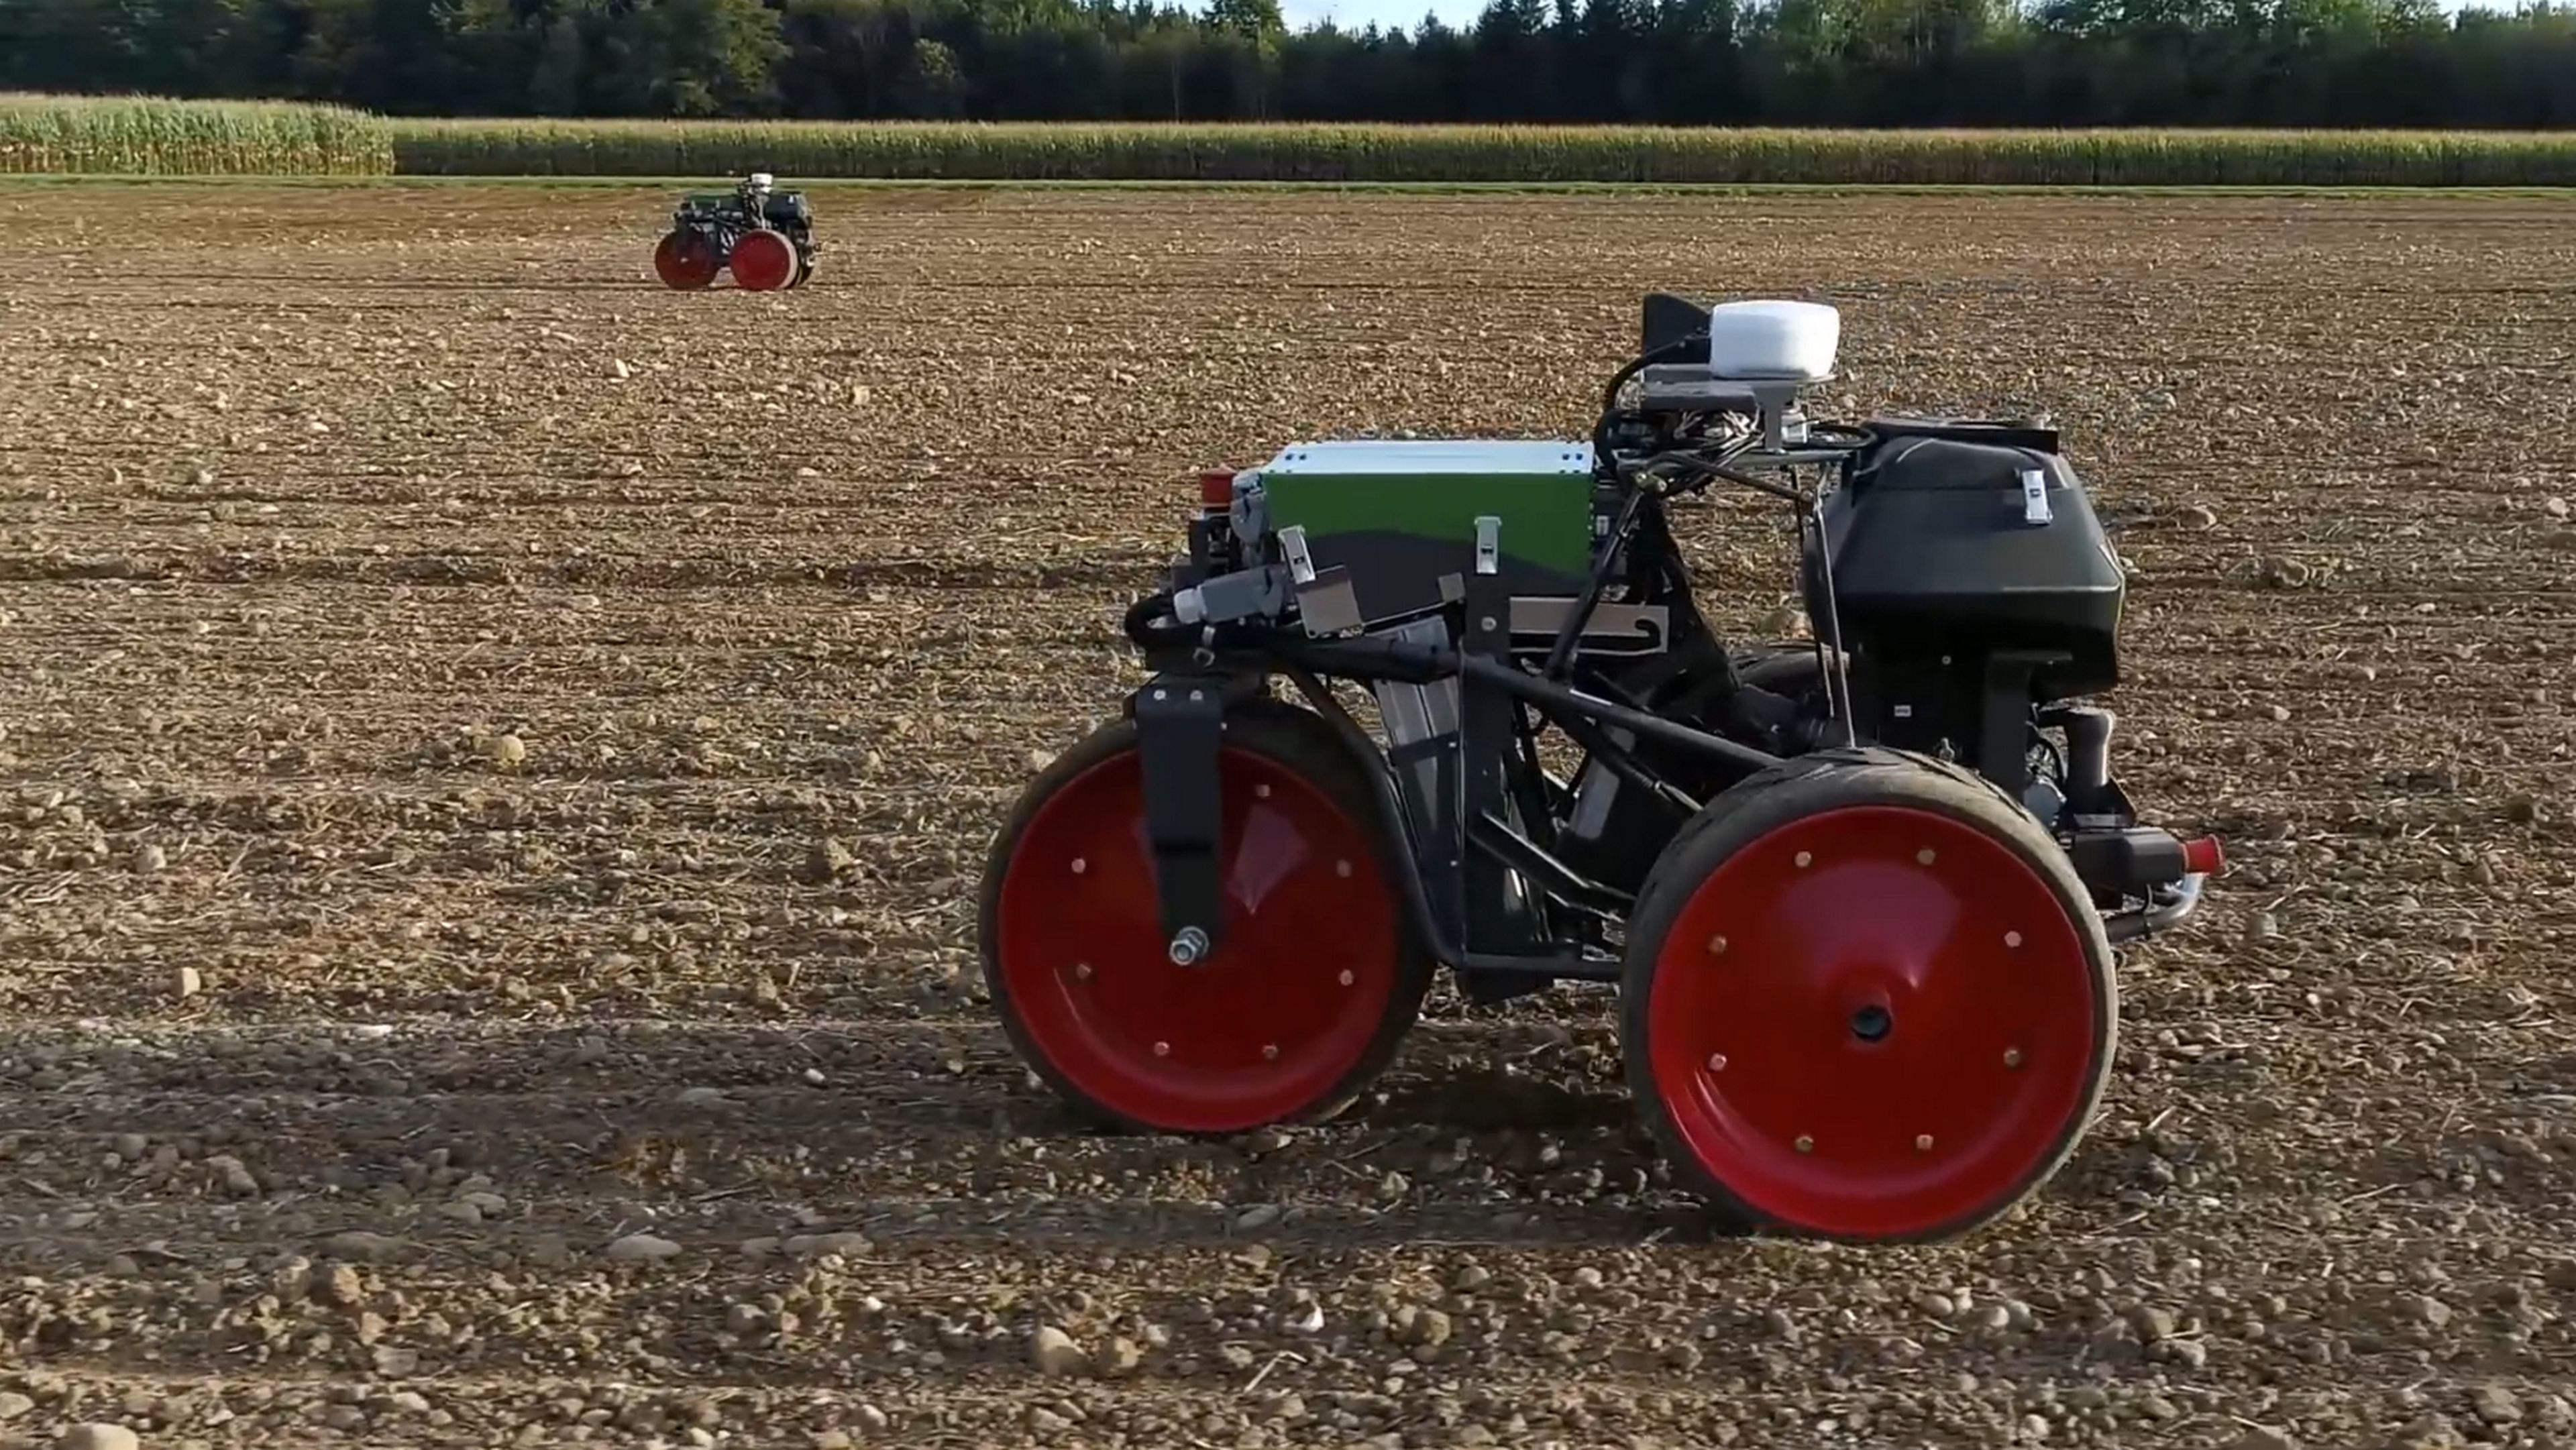 Agricultores, se acabó el arar y sembrar los campos: estos robots lo hacen solos